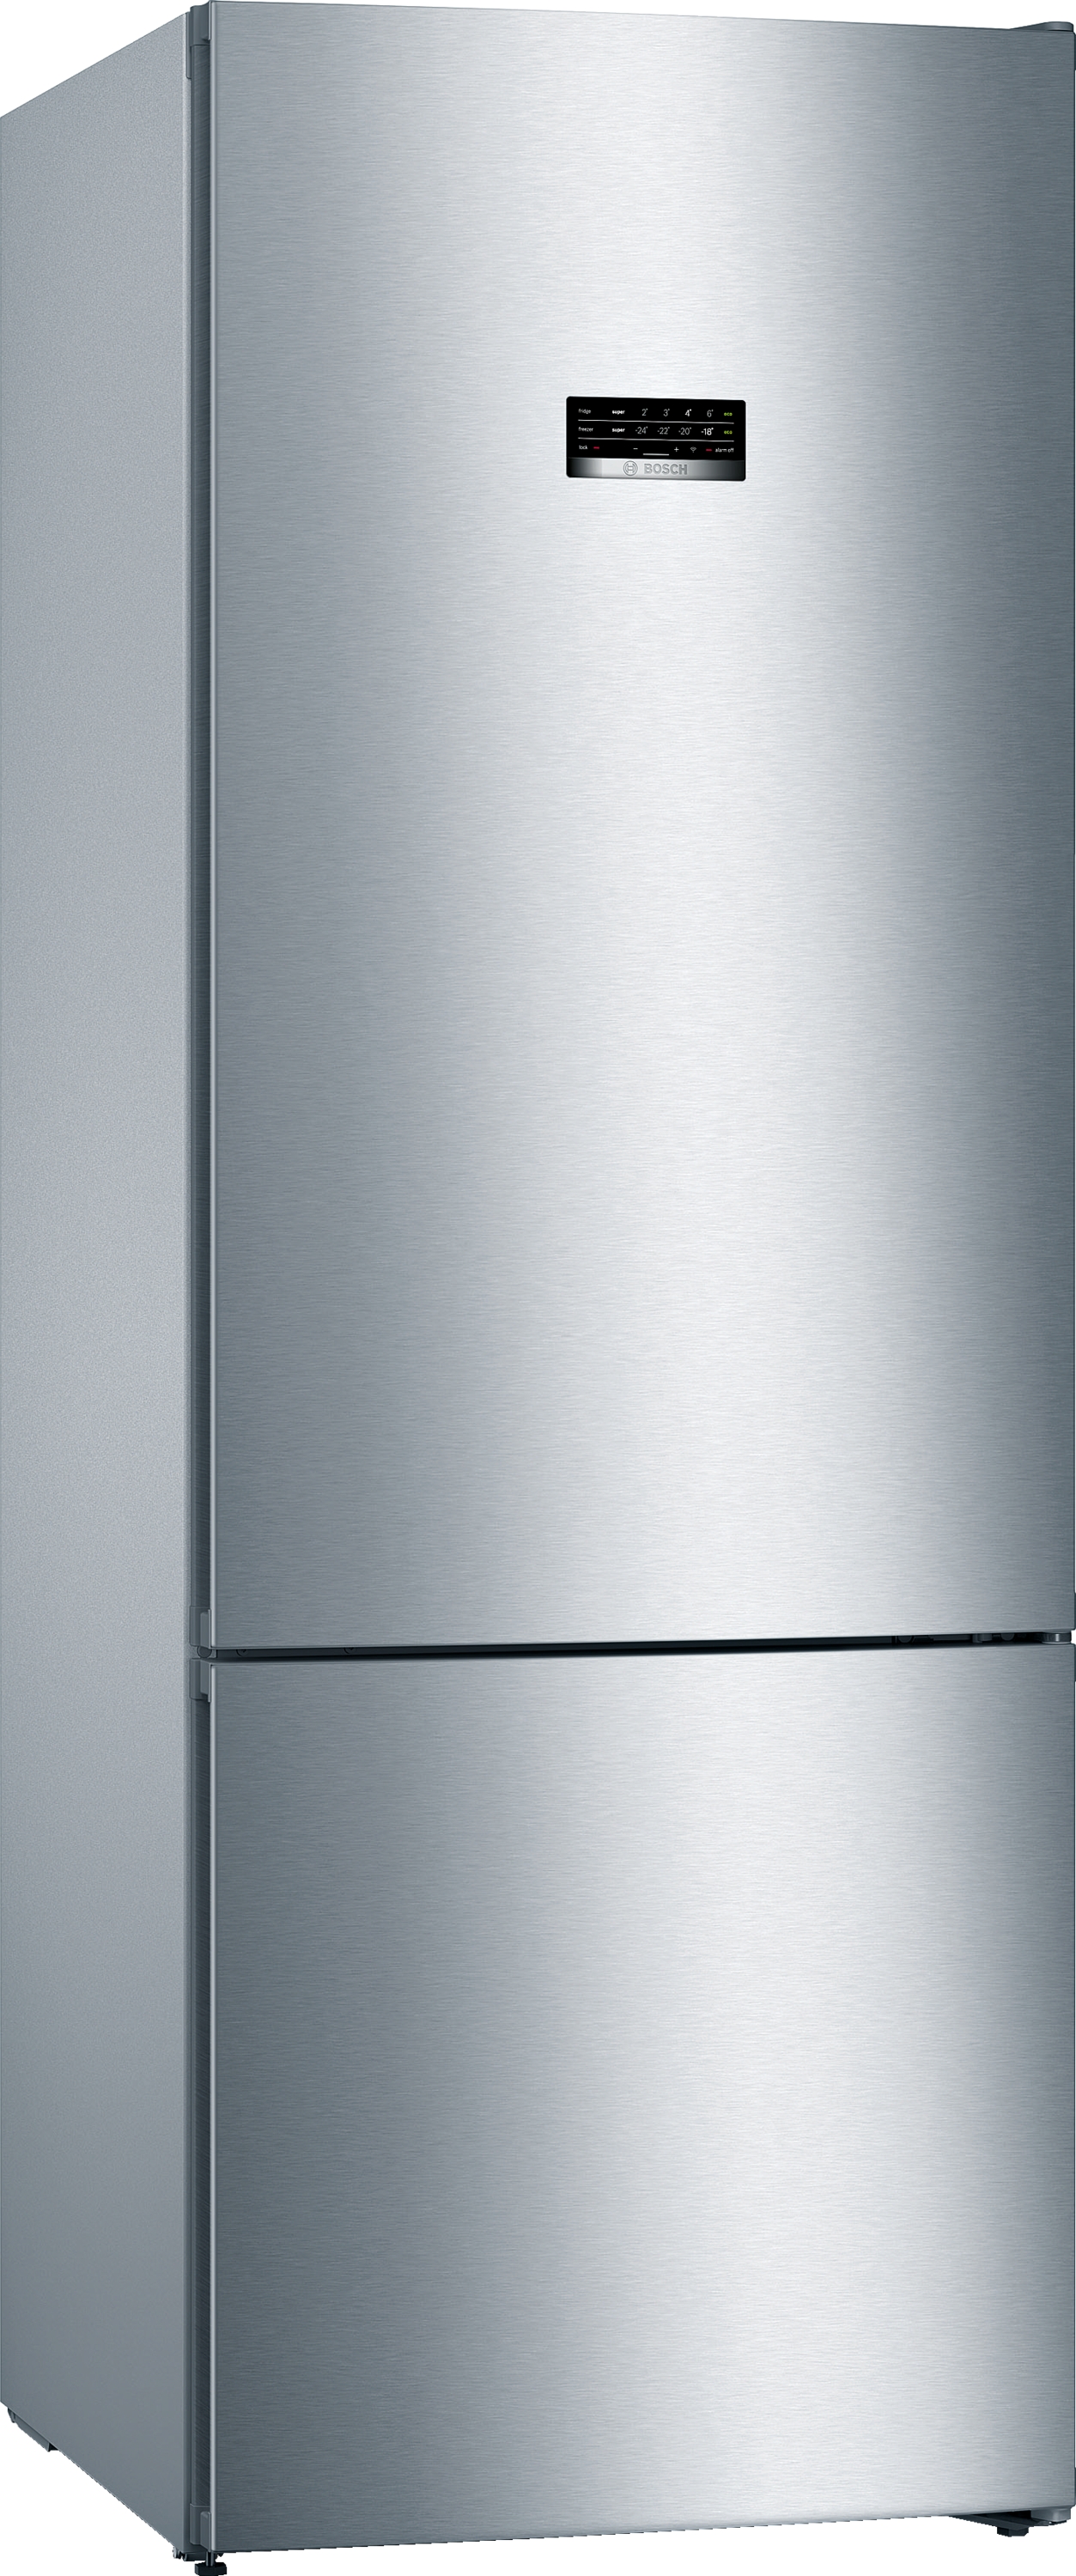 KGN56XLEA, Samostojeći frižider sa zamrzivačem dole